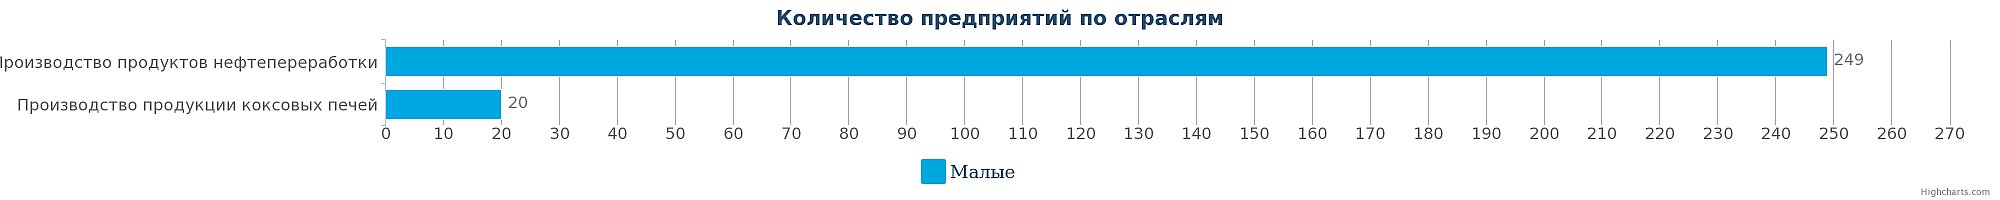 Количество компаний в сфере производства кокса и продуктов нефтепереработки в Республике Казахстан по видам на 30.01.2017